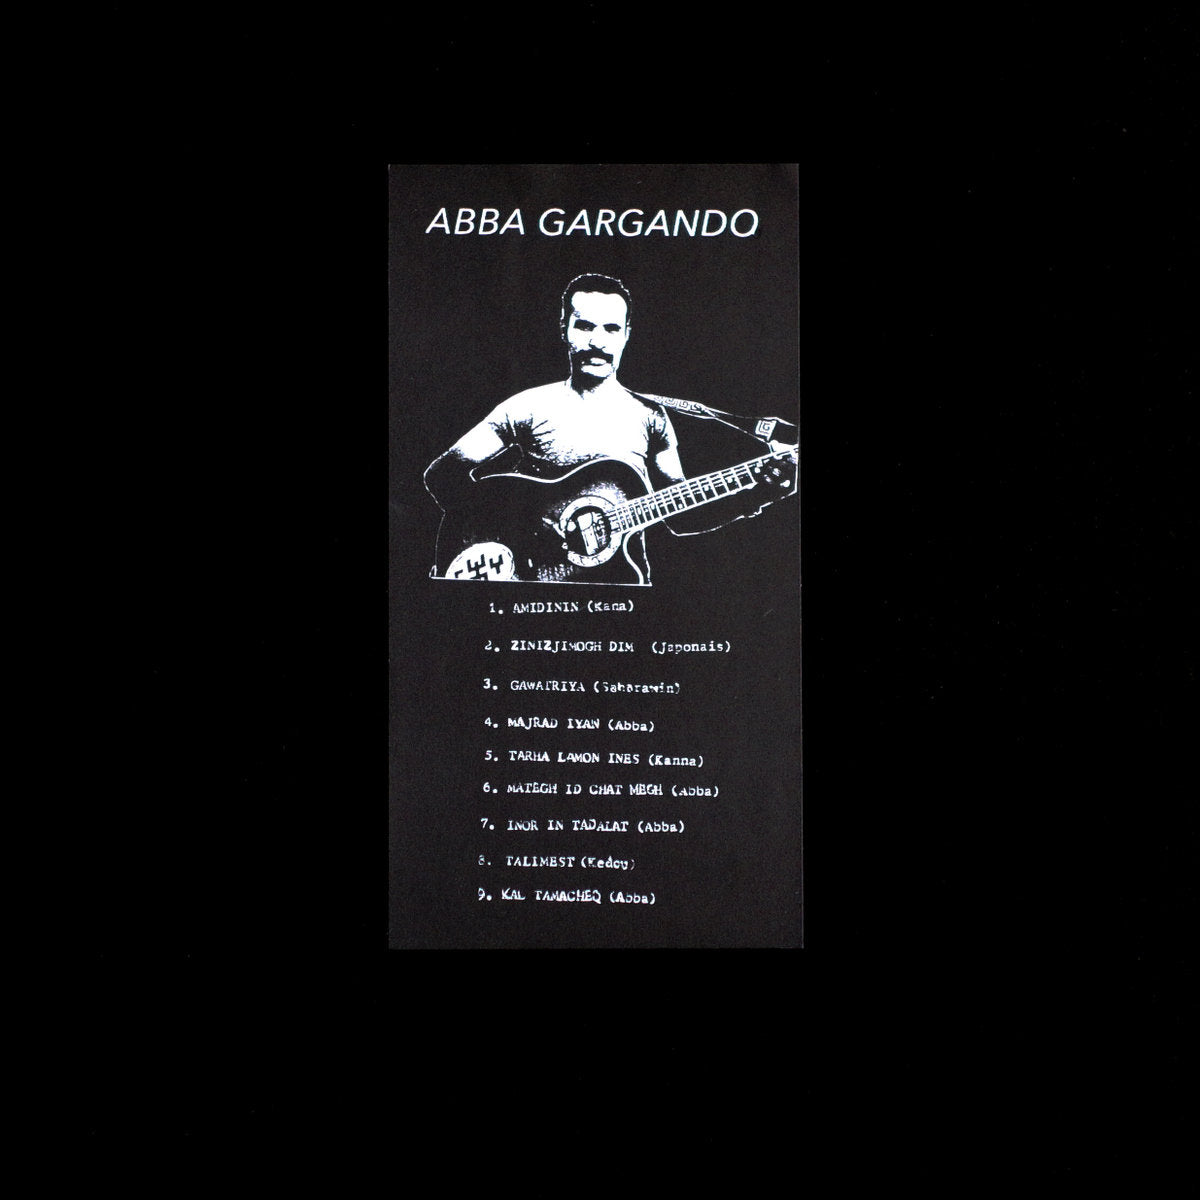 ABBA GARGANDO - ABBA GARGANDO Vinyl LP